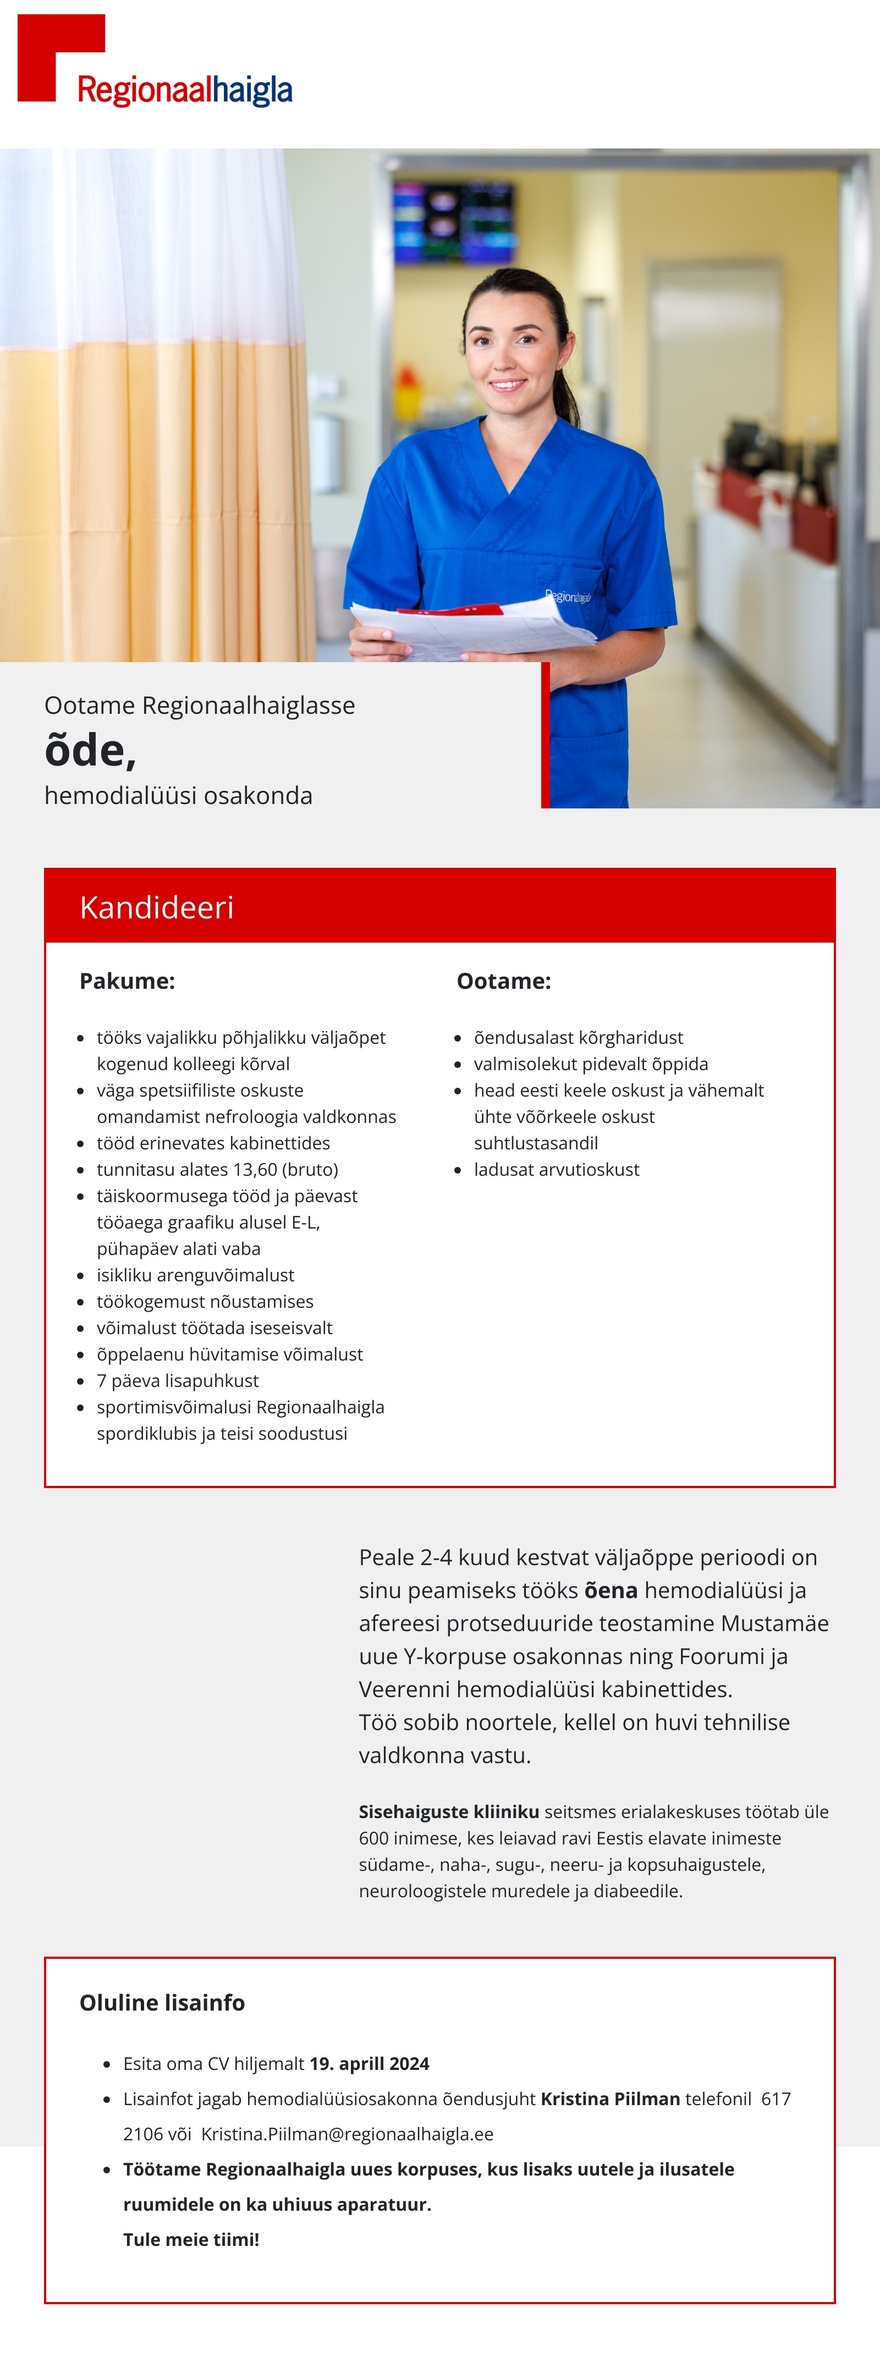 Põhja-Eesti Regionaalhaigla Õde hemodialüüsi osakonda